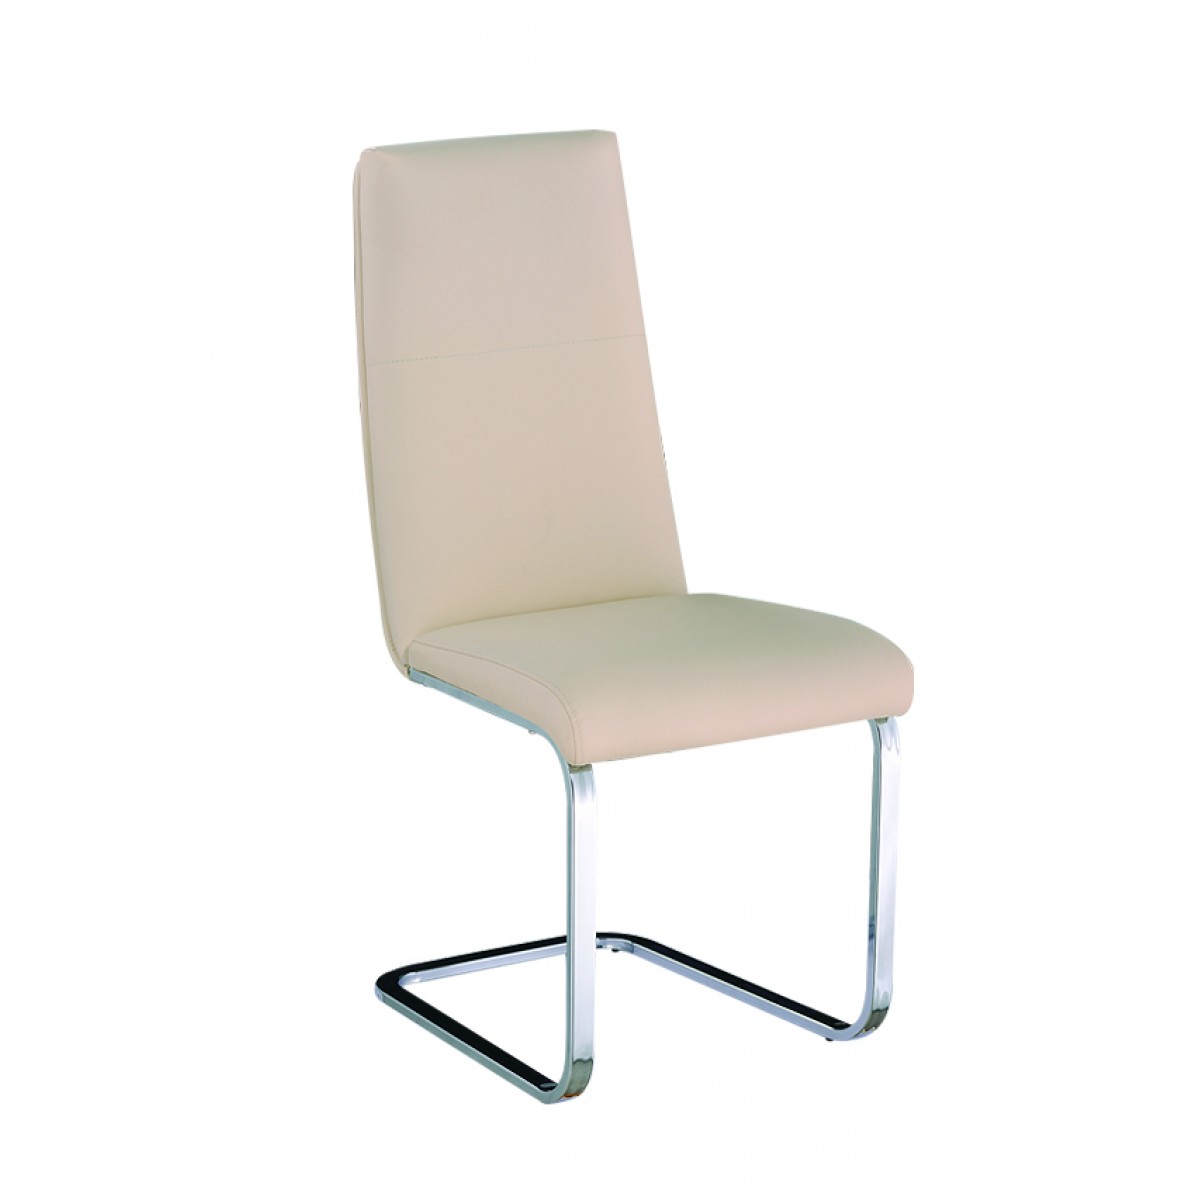 стул s образный мягкий 430х550х840 сиденье и спинка кожзам